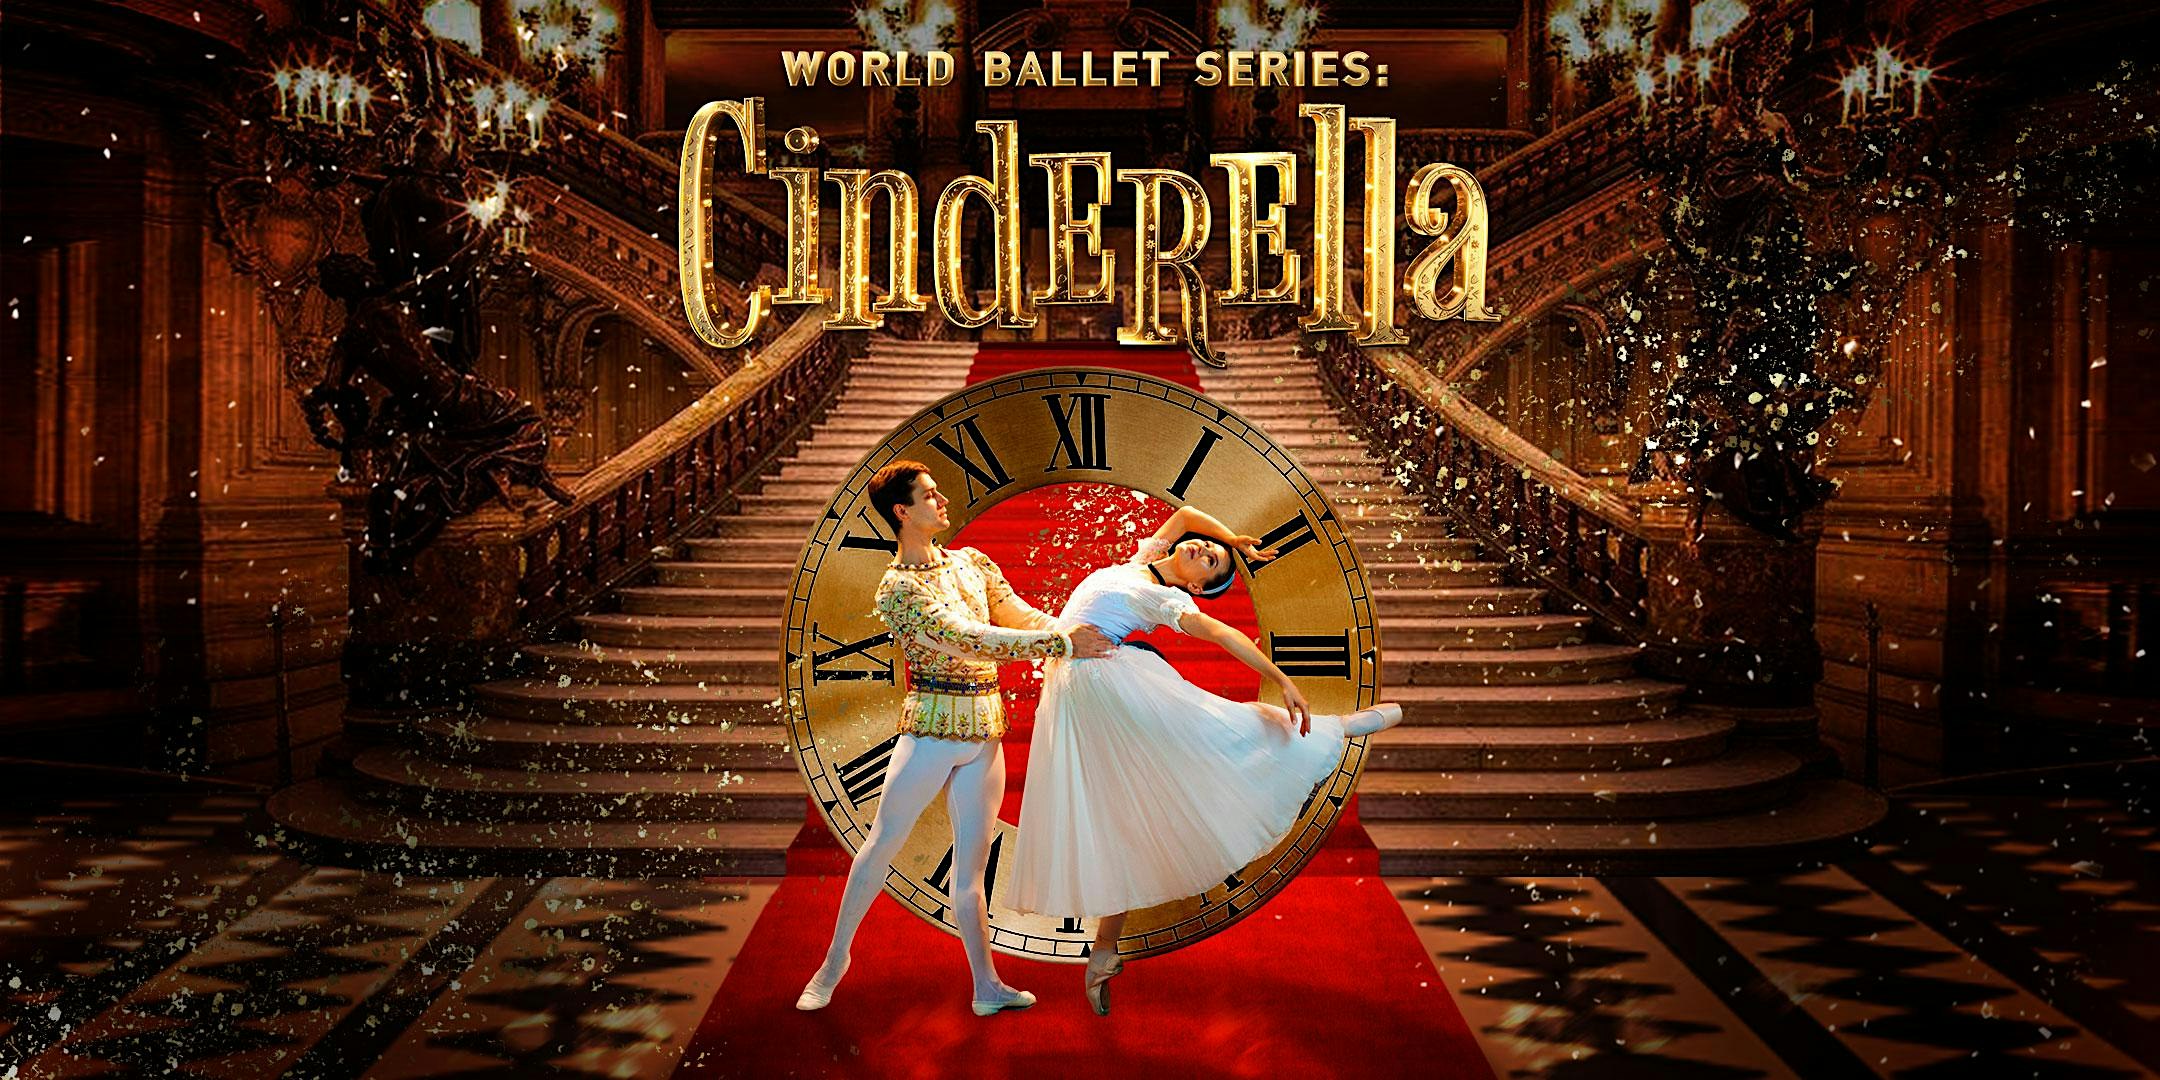 World Ballet Series:  Cinderella